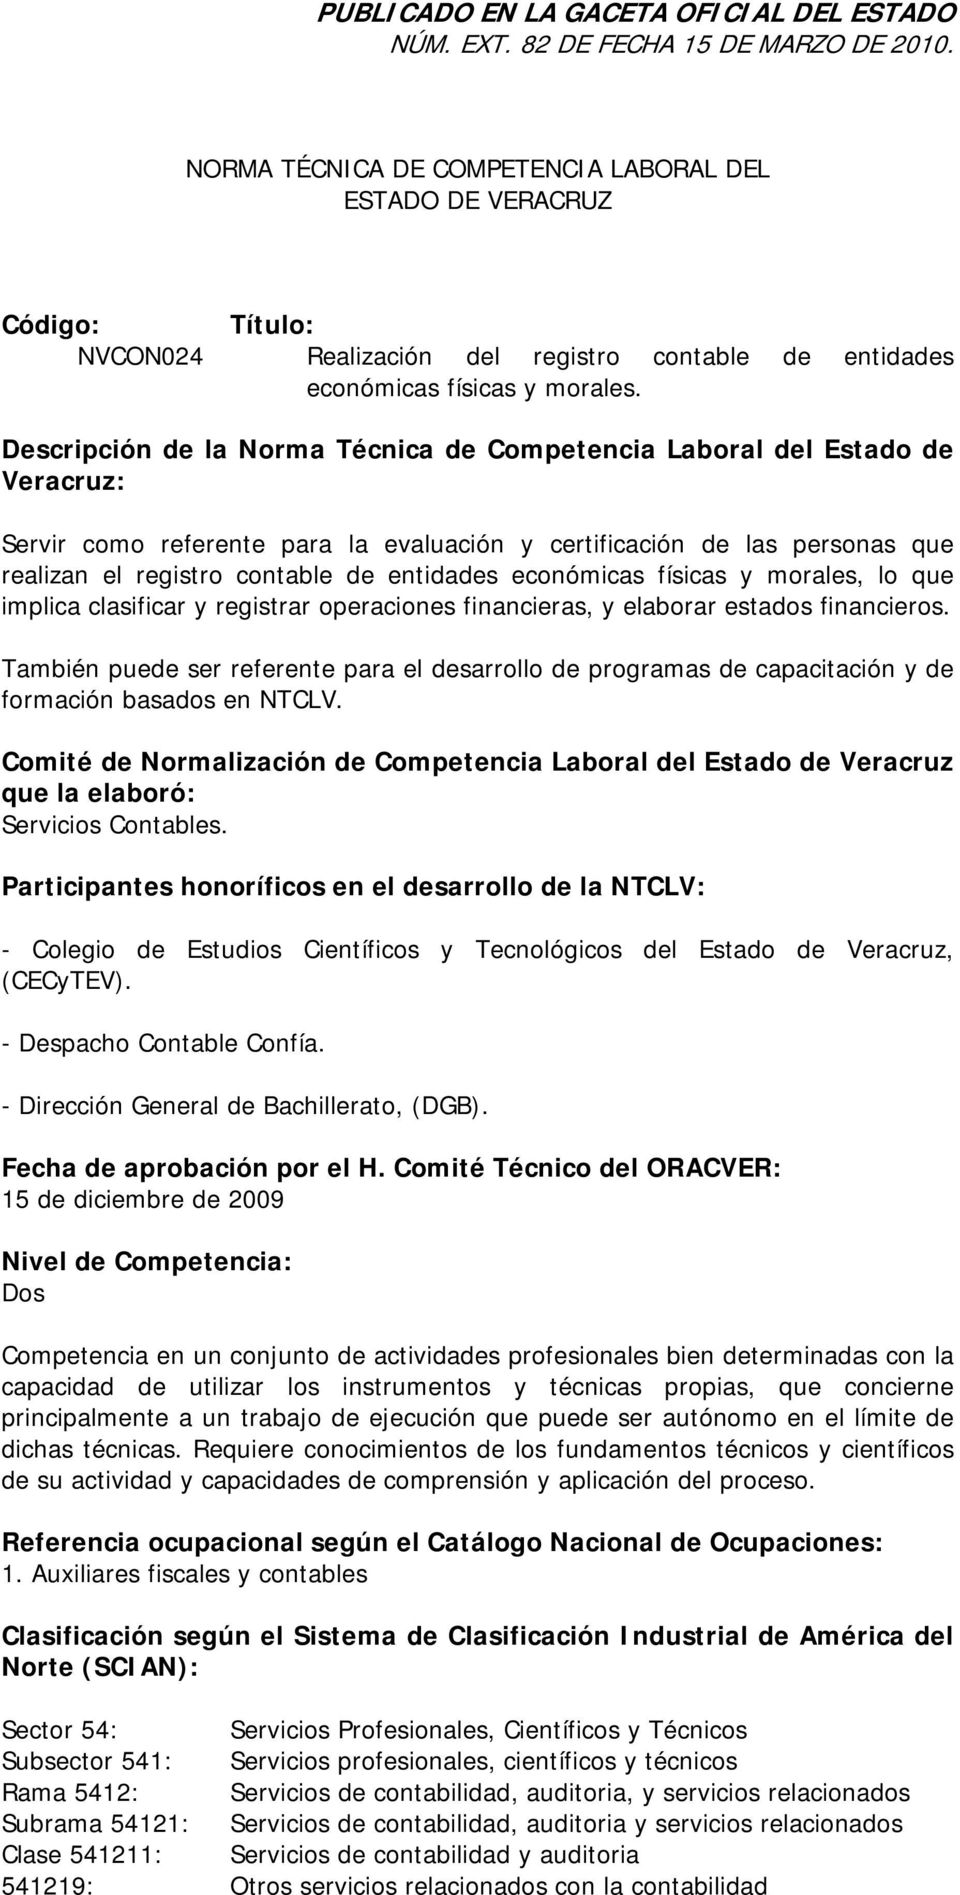 Descripción de la Norma Técnica de Competencia Laboral del Estado de Veracruz: Servir como referente para la evaluación y certificación de las personas que realizan el registro contable de entidades